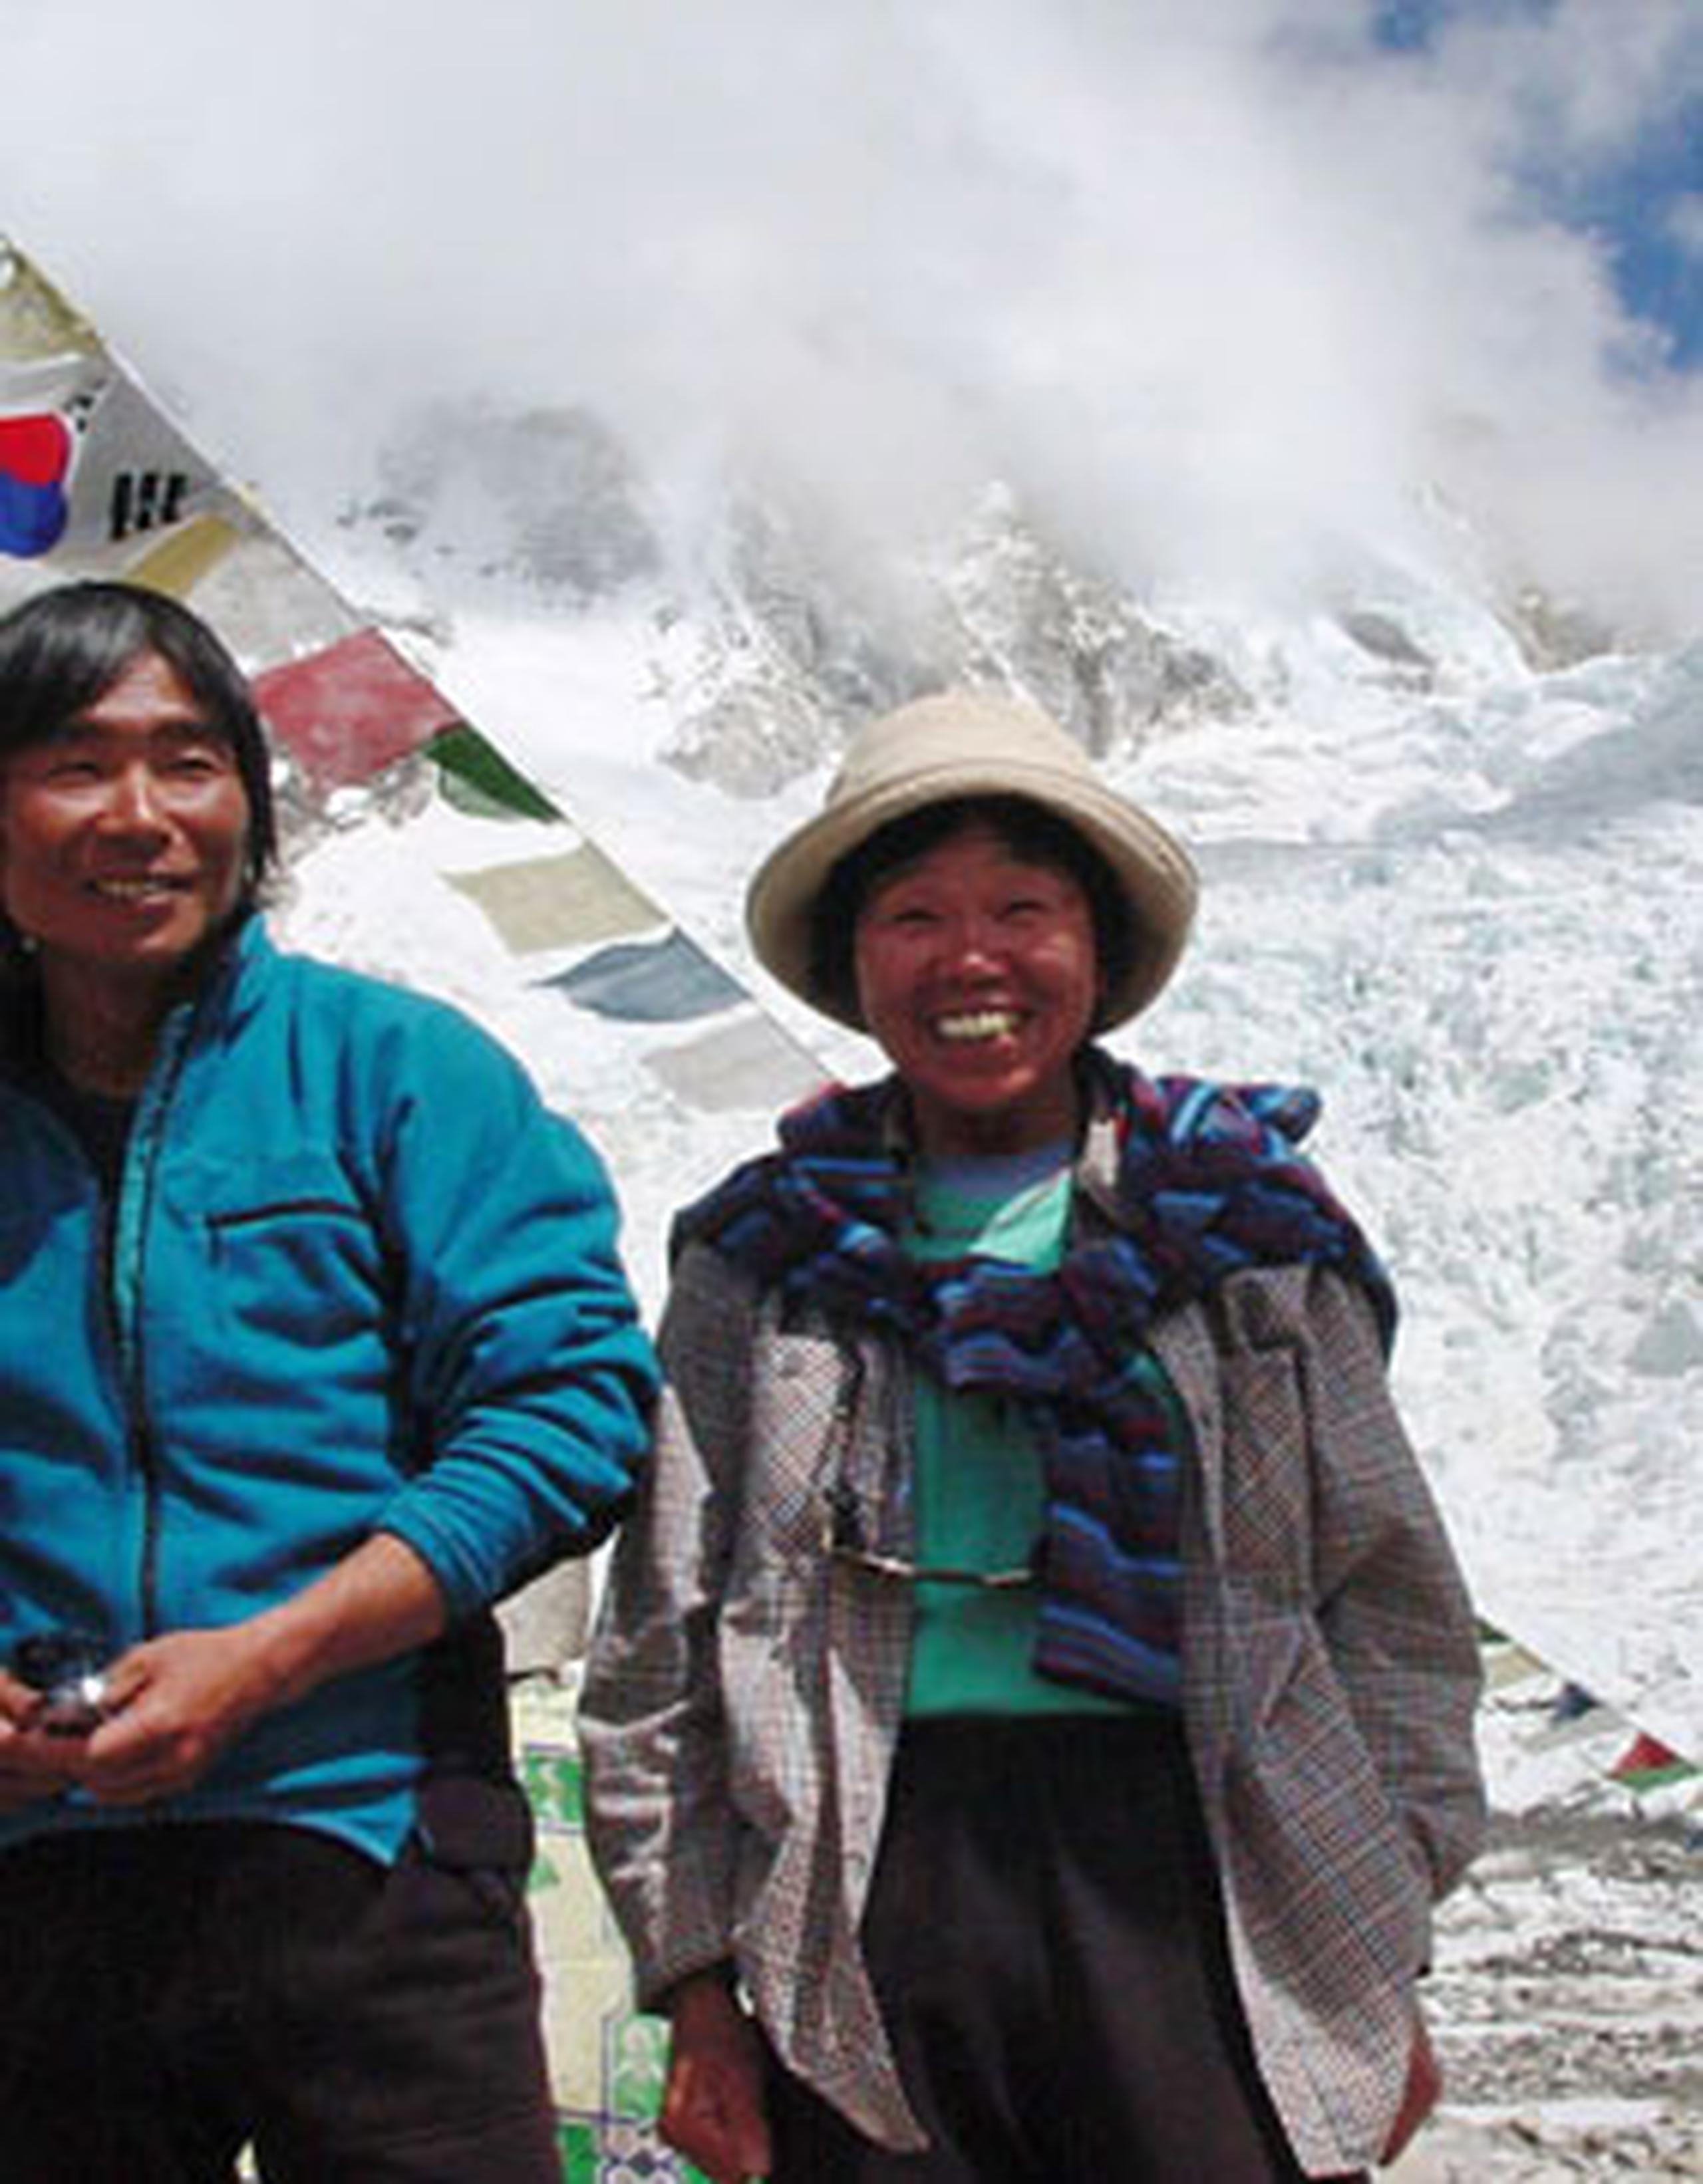 Tshering dijo que Watanabe y los otros alpinistas se encontraban en buenas condiciones y habían emprendido el descenso. (AP)